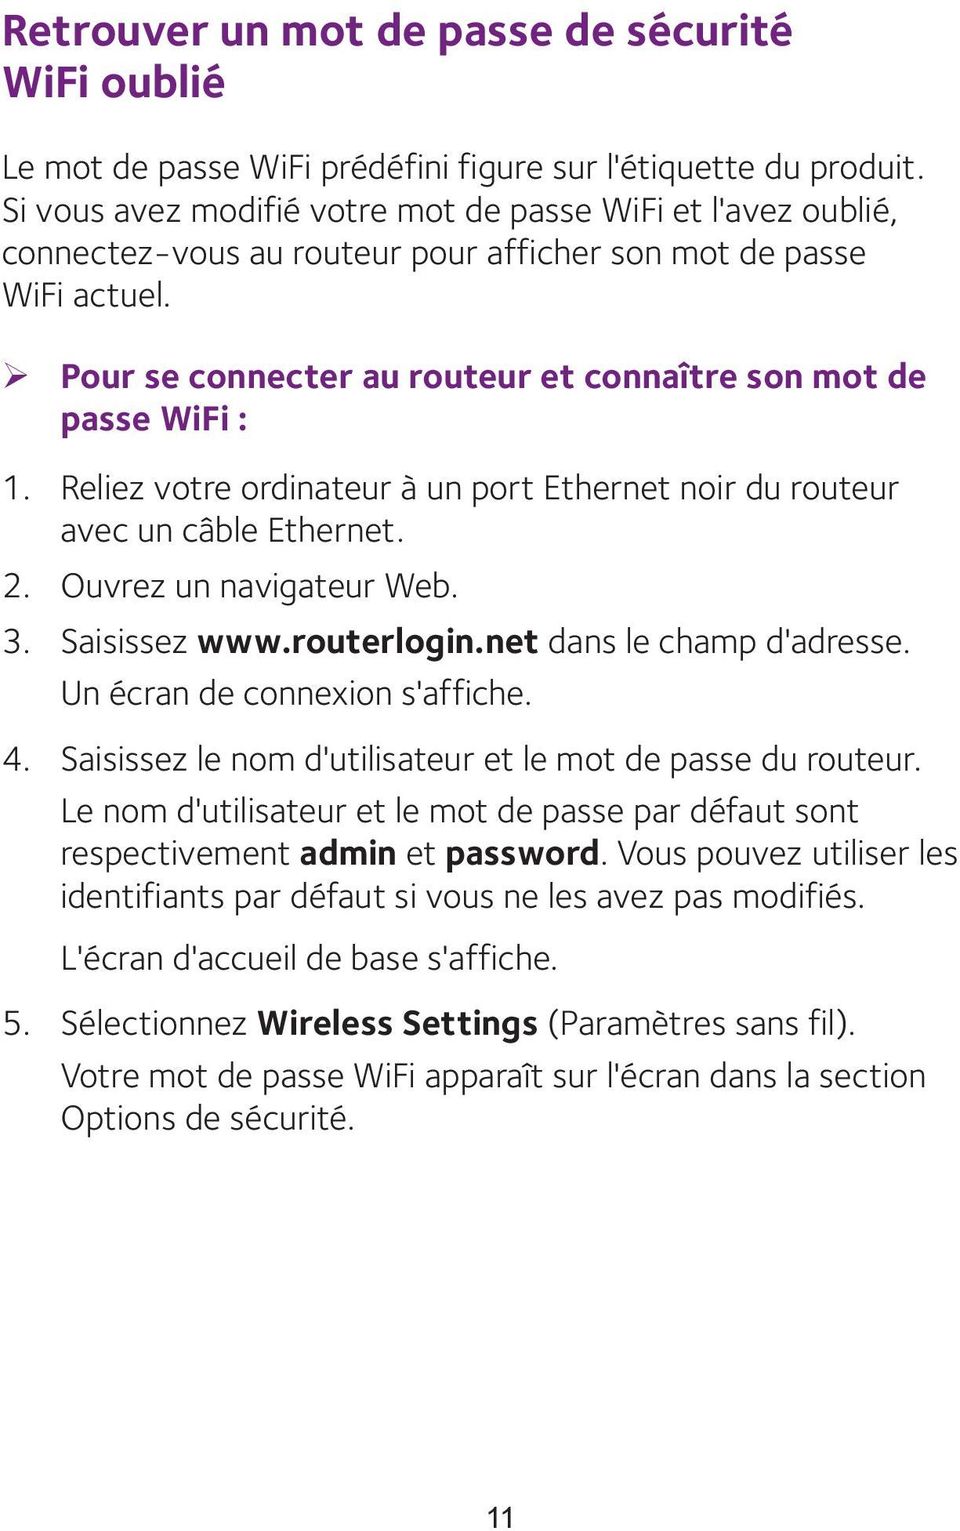 ¾ Pour se connecter au routeur et connaître son mot de passe WiFi : 1. Reliez votre ordinateur à un port Ethernet noir du routeur avec un câble Ethernet. 2. Ouvrez un navigateur Web. 3. Saisissez www.